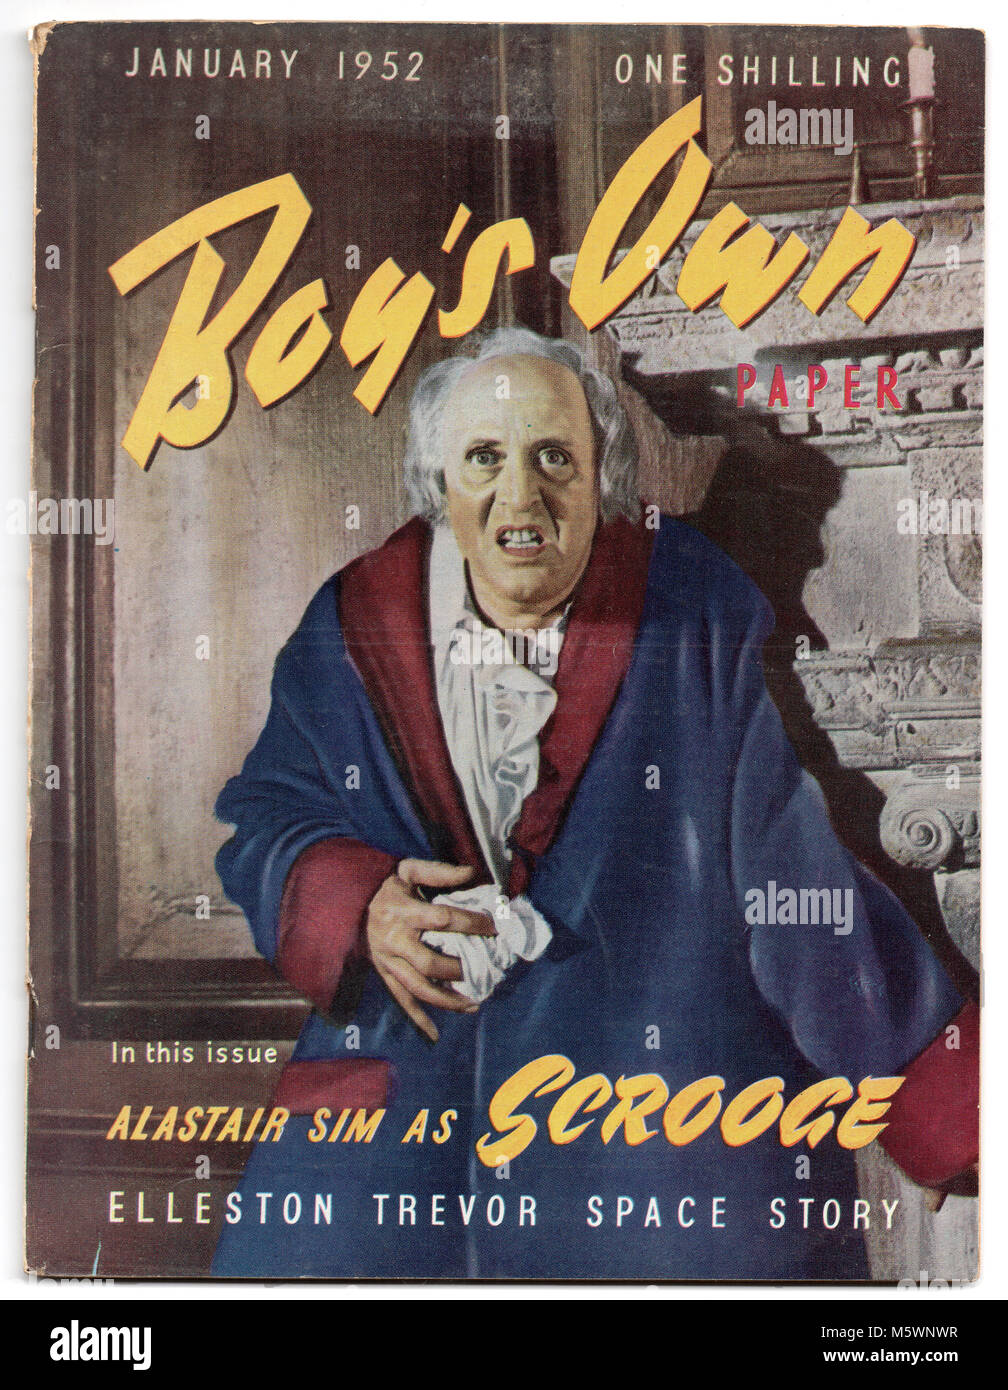 Alastair Sim comme Scrooge sur le couvercle de la propre garçon , janvier 1952. Banque D'Images